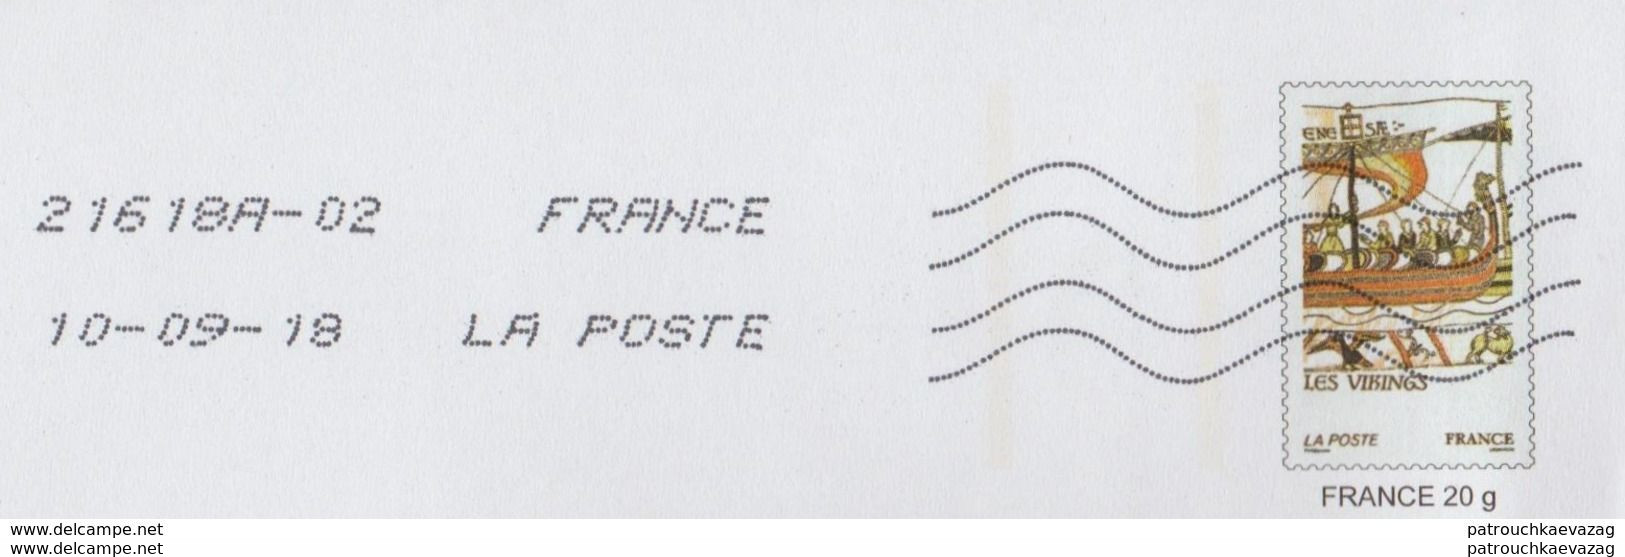 France 2018/19, 5 entiers privés offre commerciale destinéo avec pseudo timbres